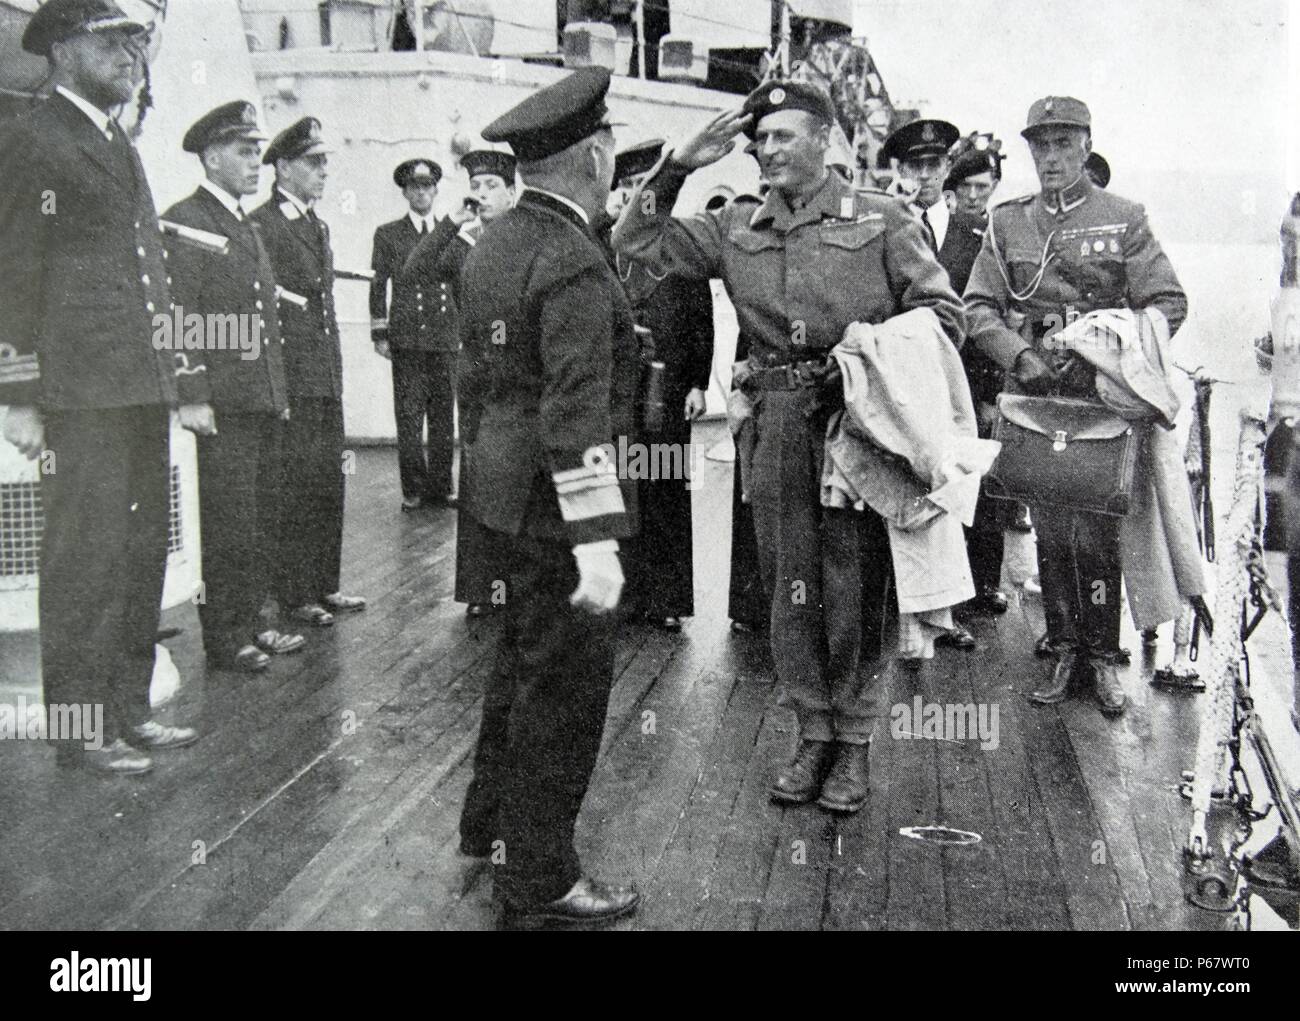 Prince Olav de Norvège revient à la maison sur le HMS Norfolk après la libération de la Norvège après la Seconde Guerre mondiale Banque D'Images